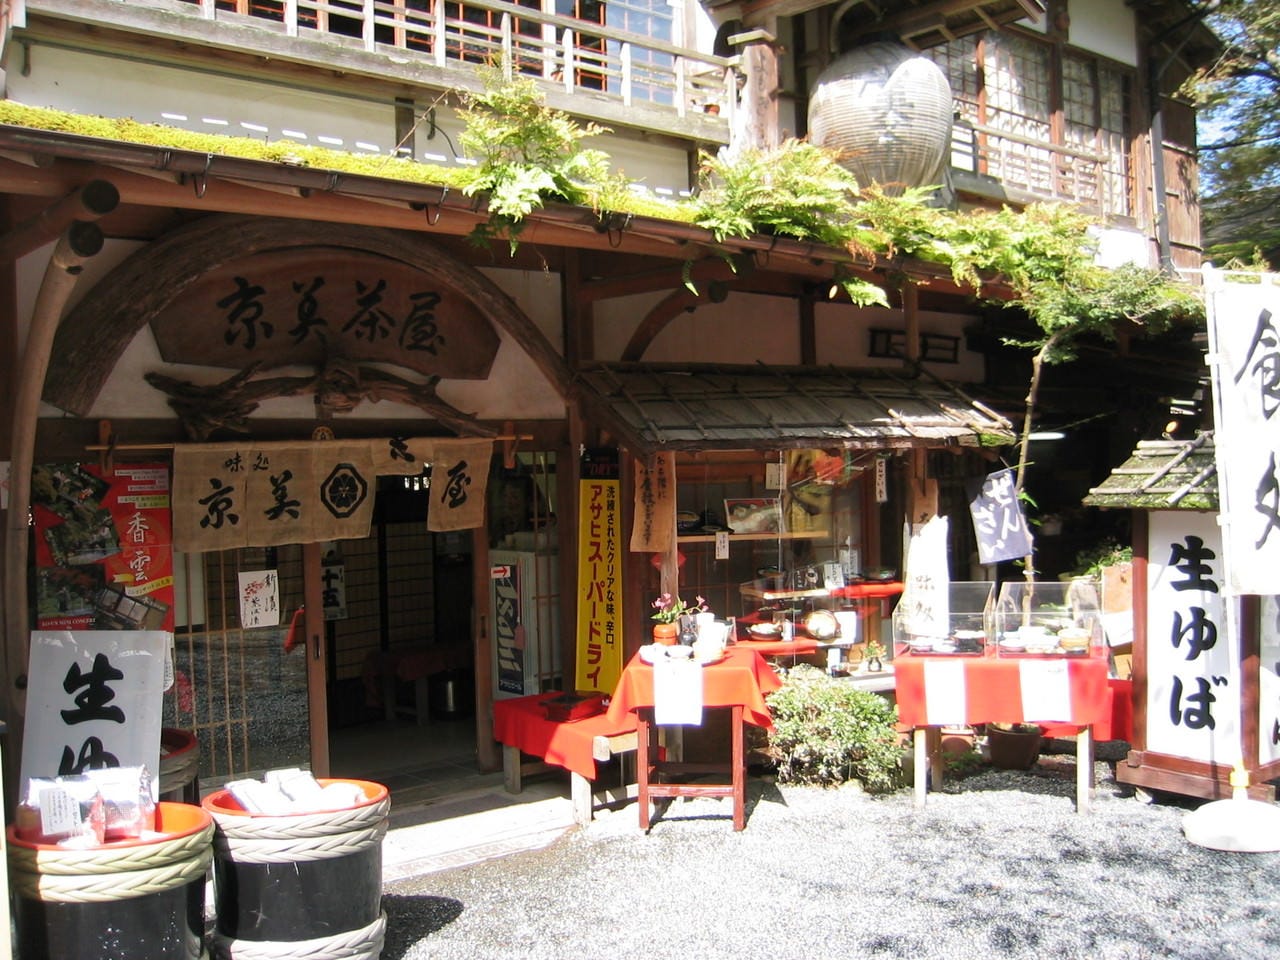 和の雰囲気が漂う昔ながらの「京美茶屋」の入り口